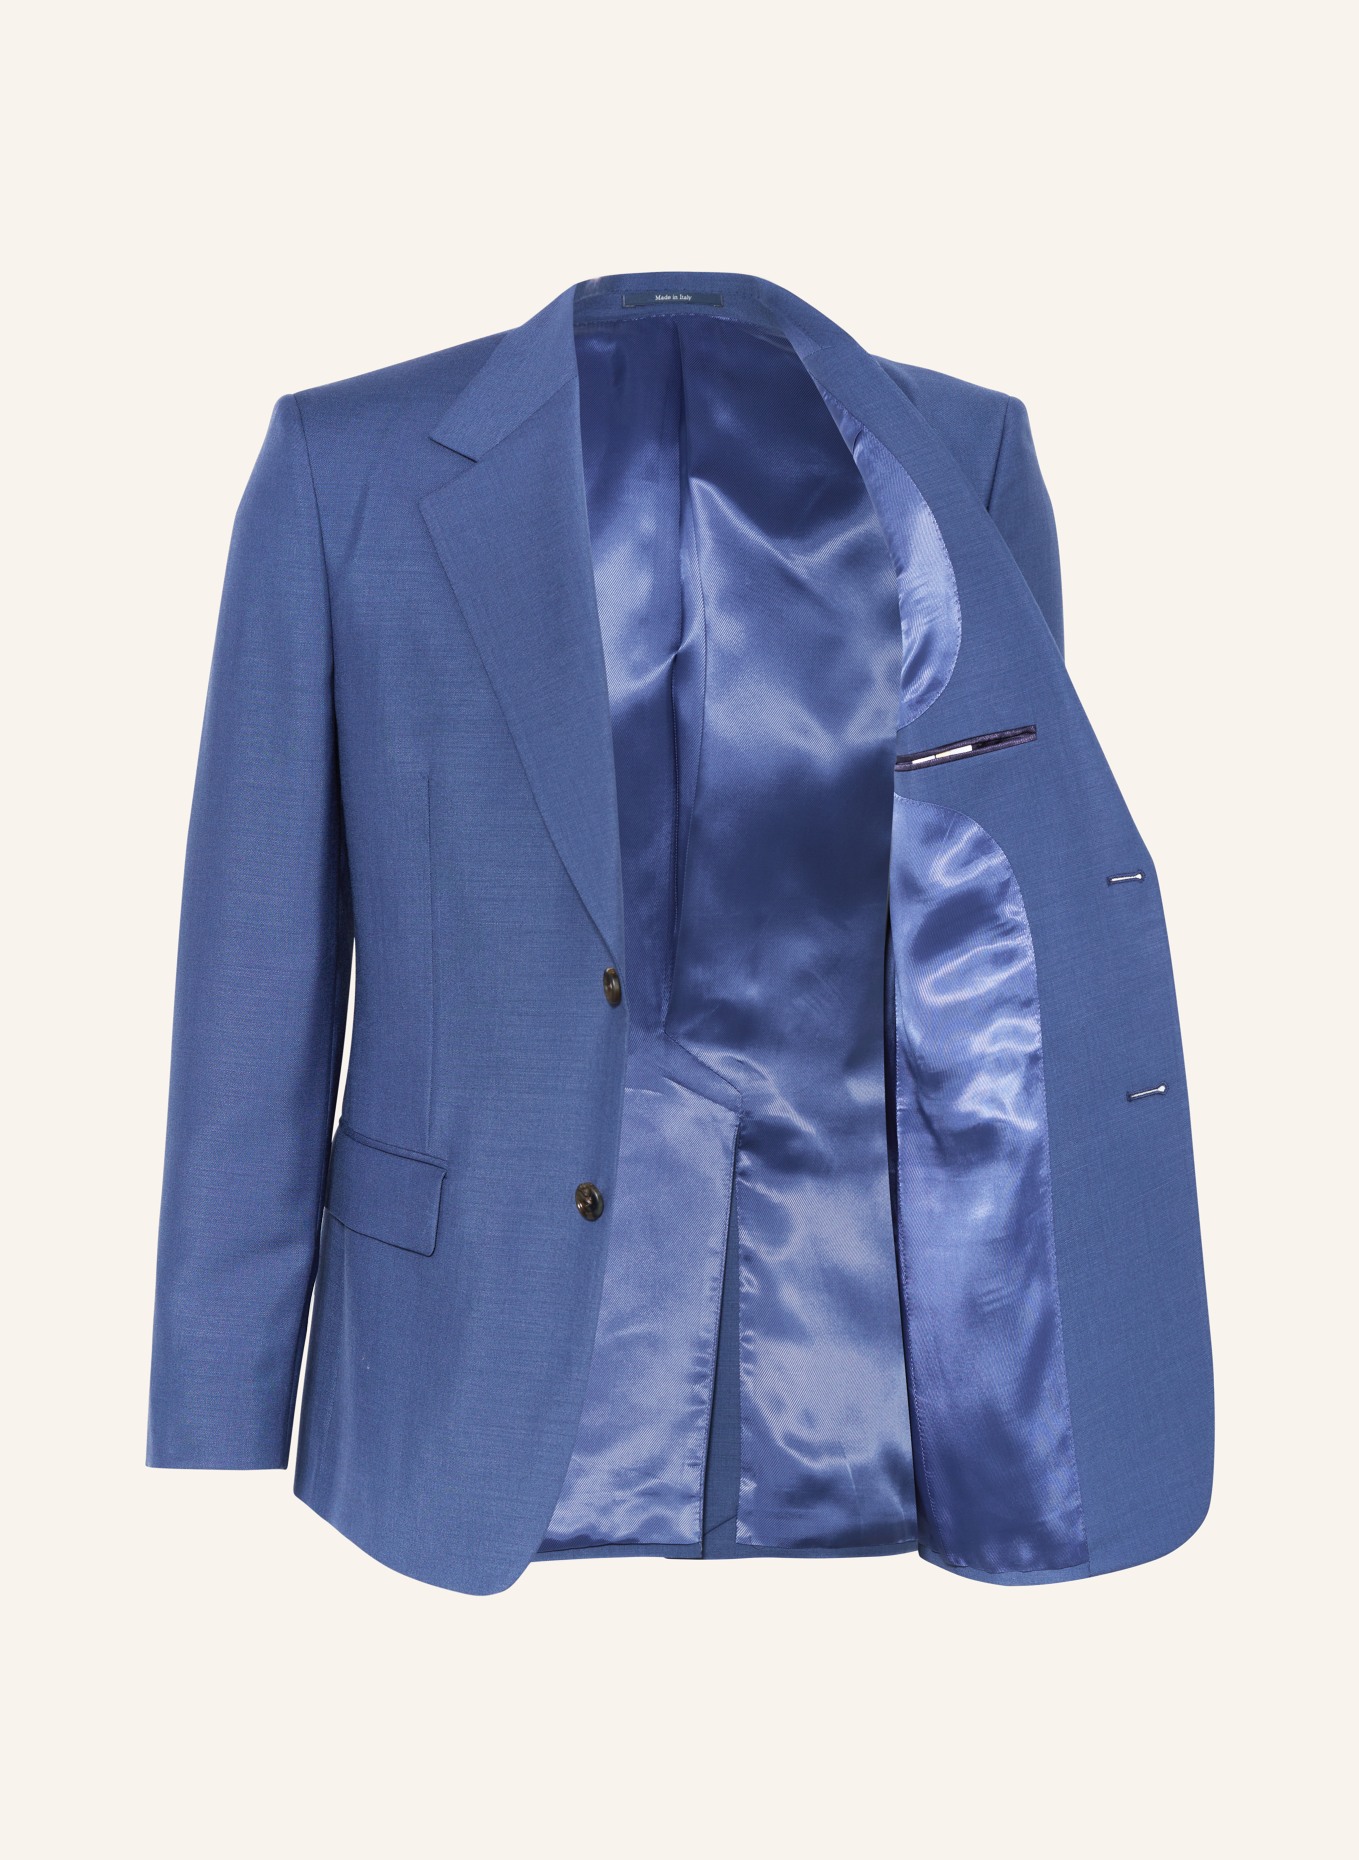 GUCCI Anzugsakko Extra Slim Fit, Farbe: 4719 STORMY SEA (LIGHT BLUE) (Bild 4)